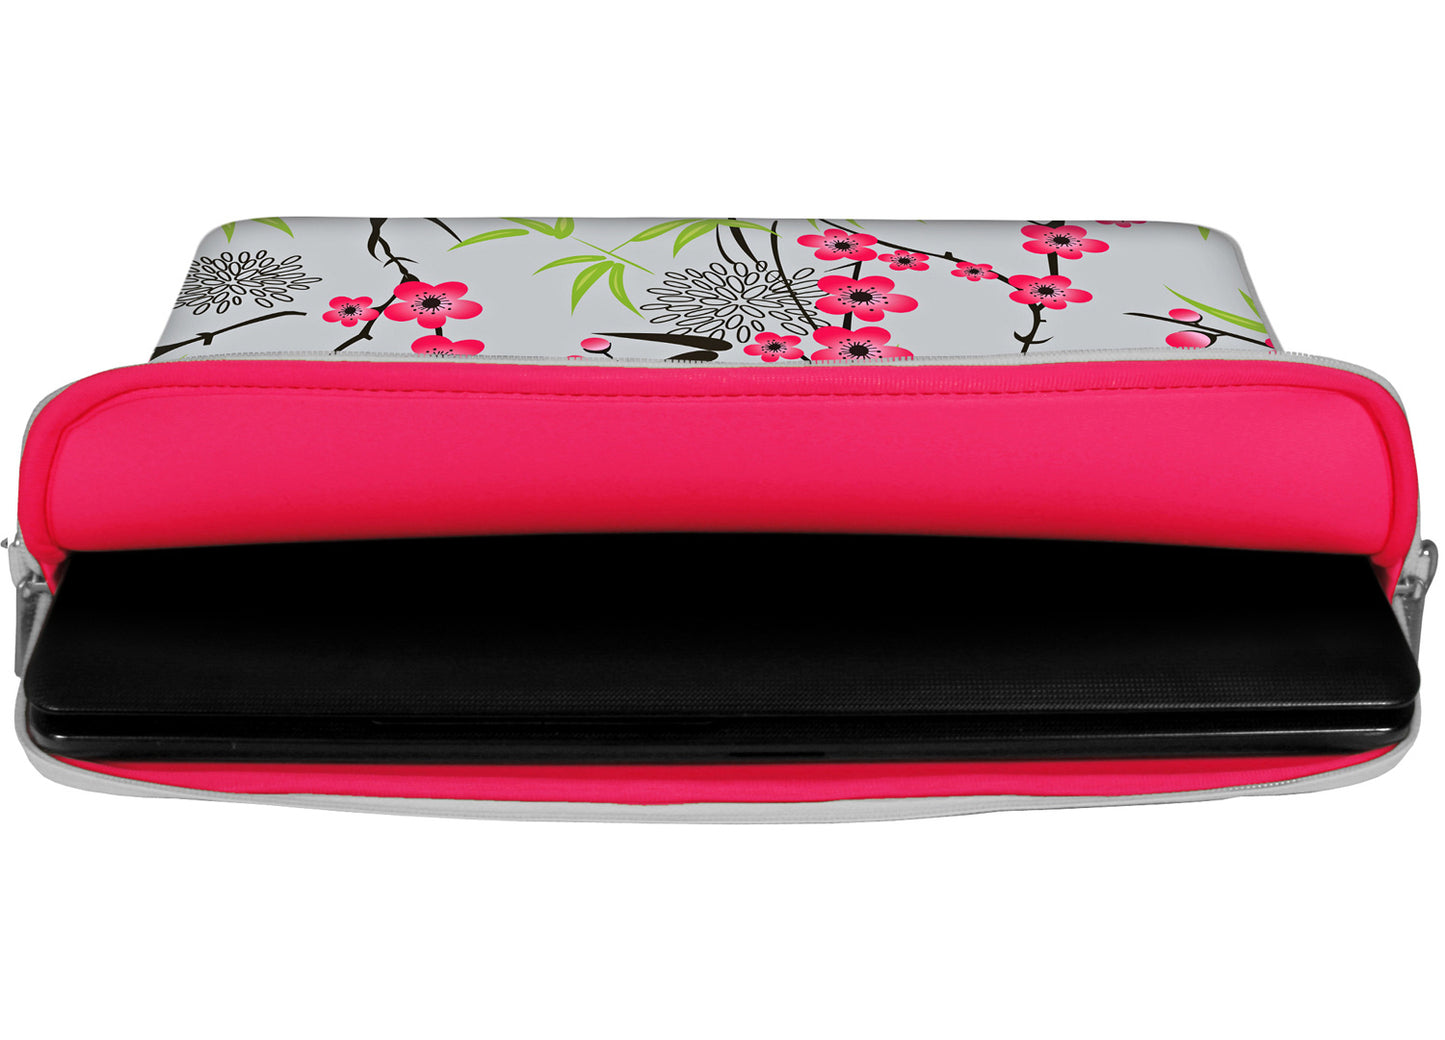 Innenansicht mit Schutzlippen der LS104 Sakura Designer Laptop Tasche in pink aus wasserabweisendem Neopren